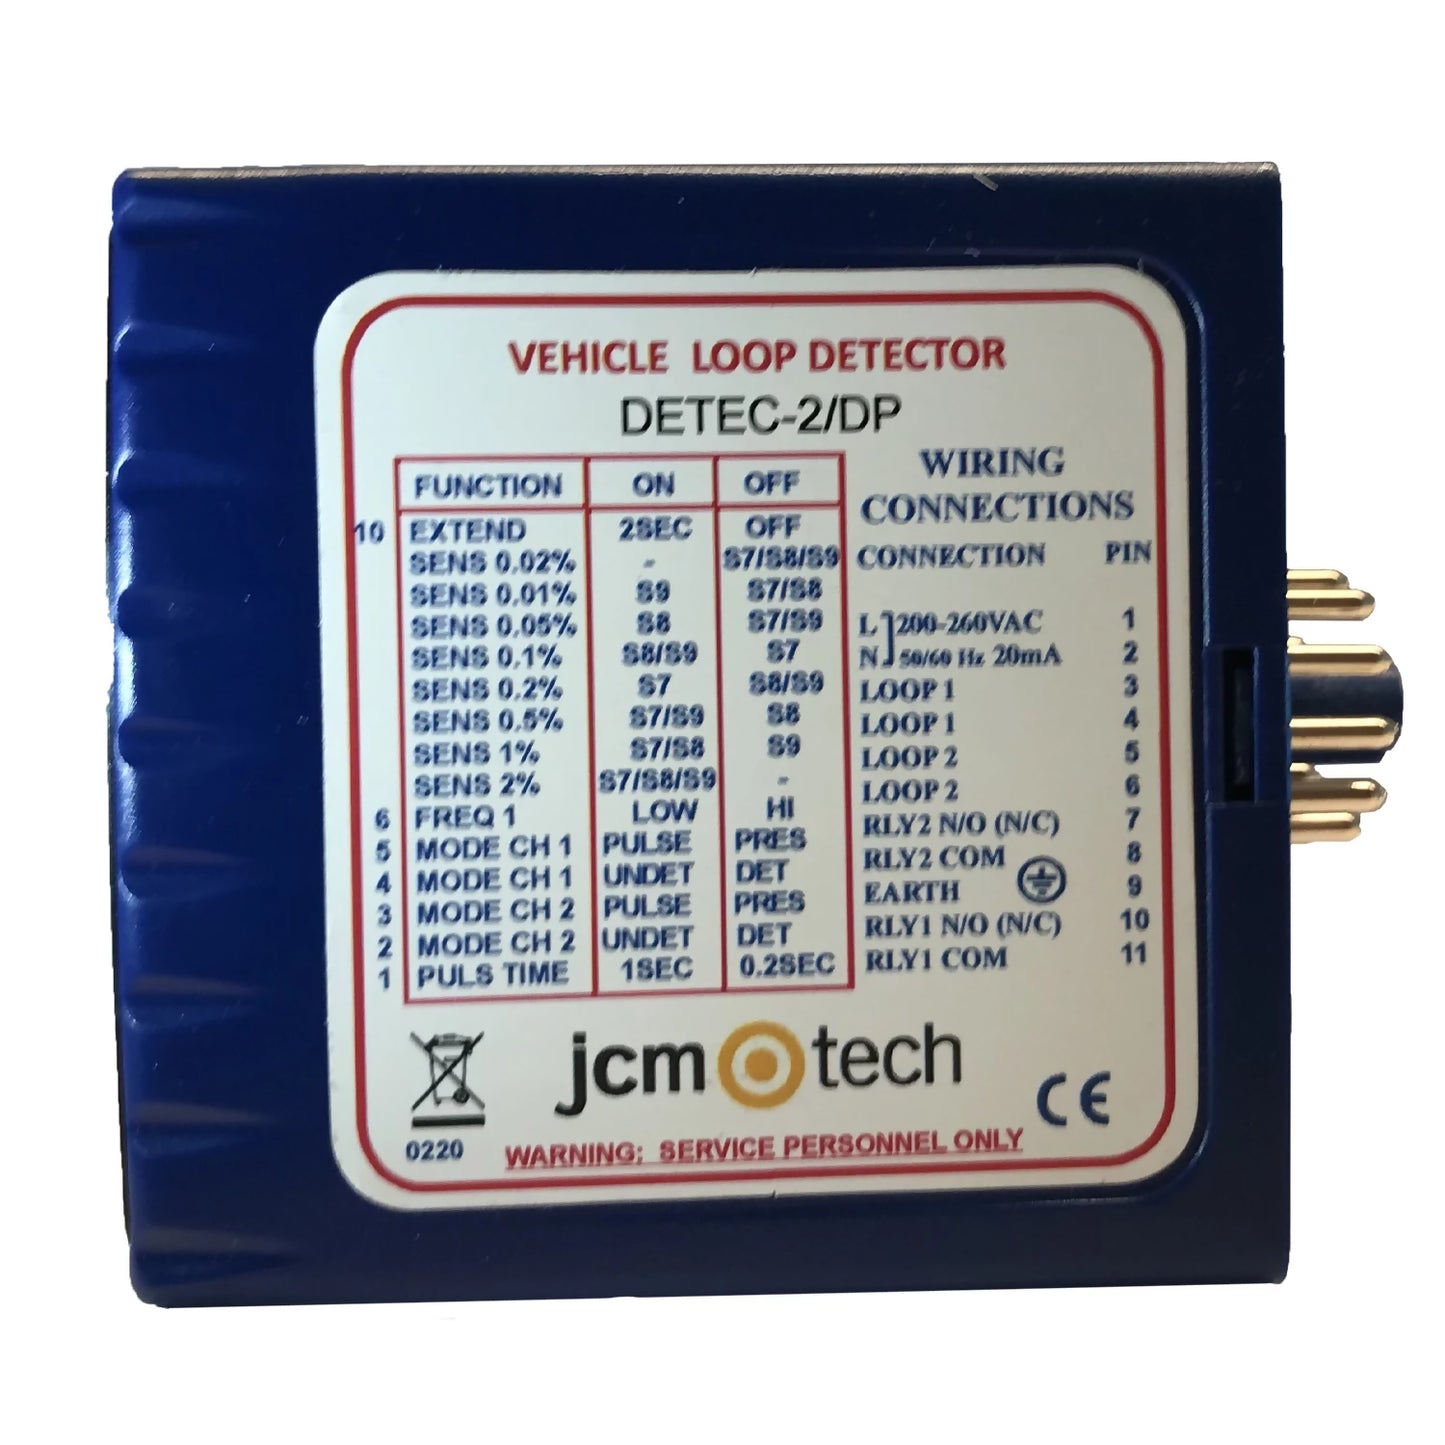 Detector magnético DETEC-2/DP para 2 lazos inductivos con lógica de dirección para detectar bicis, coches, camiones